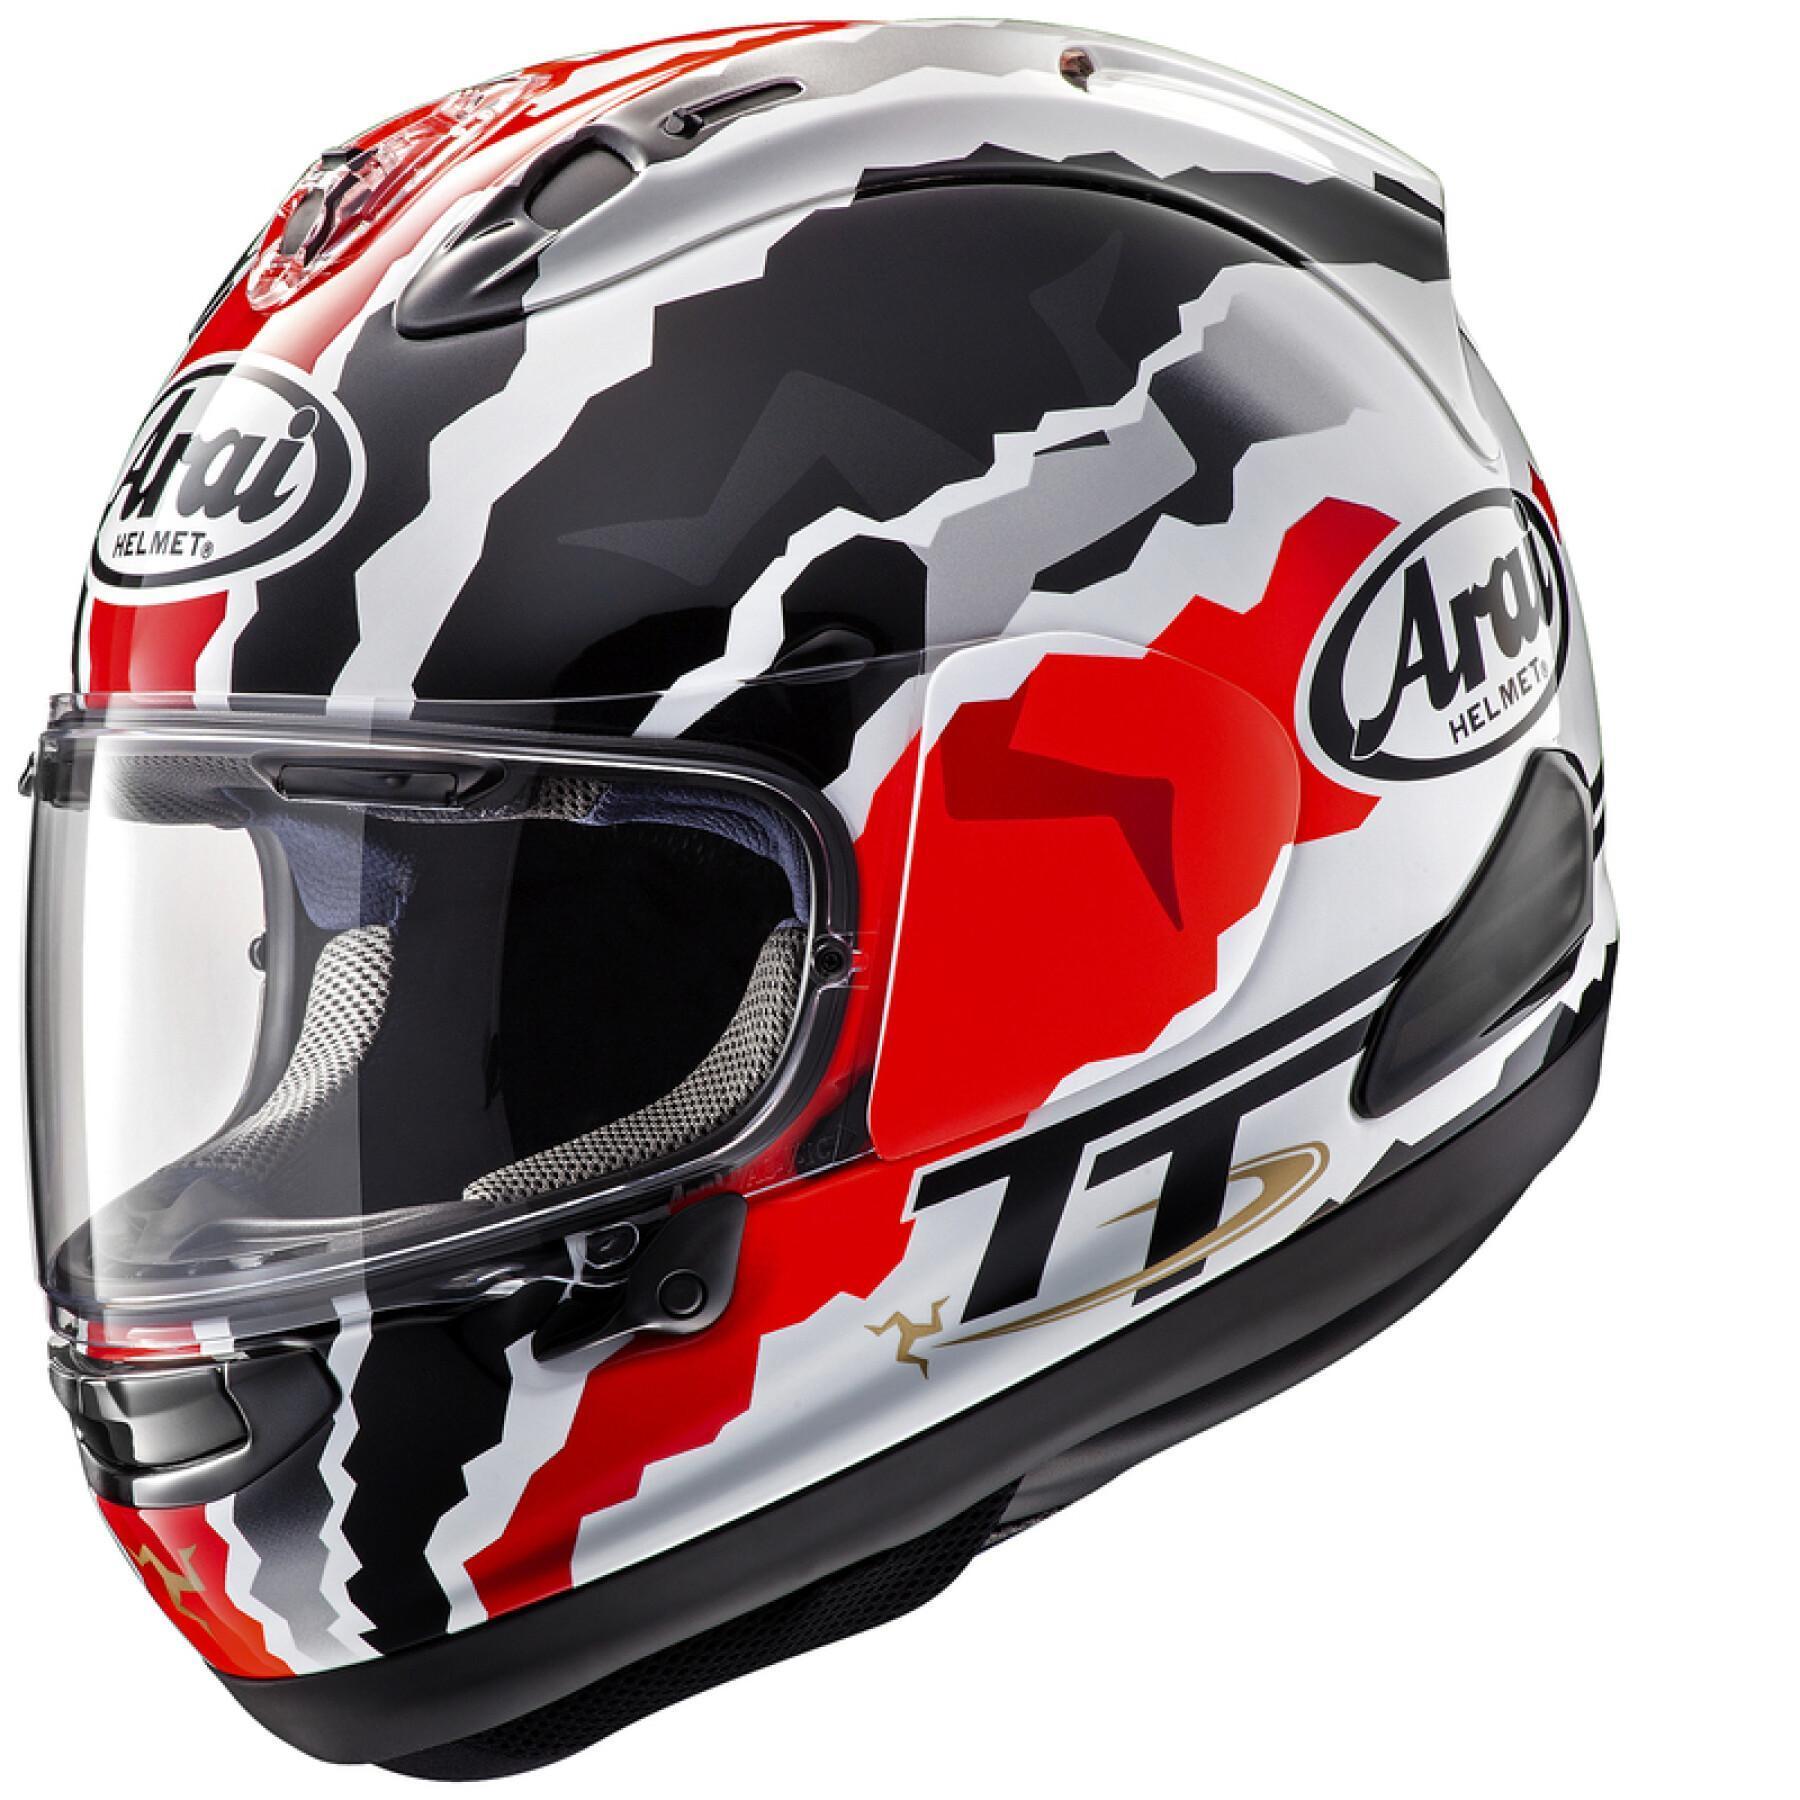 Full face motorcycle helmet Arai RX-7V EVO Doohan TT